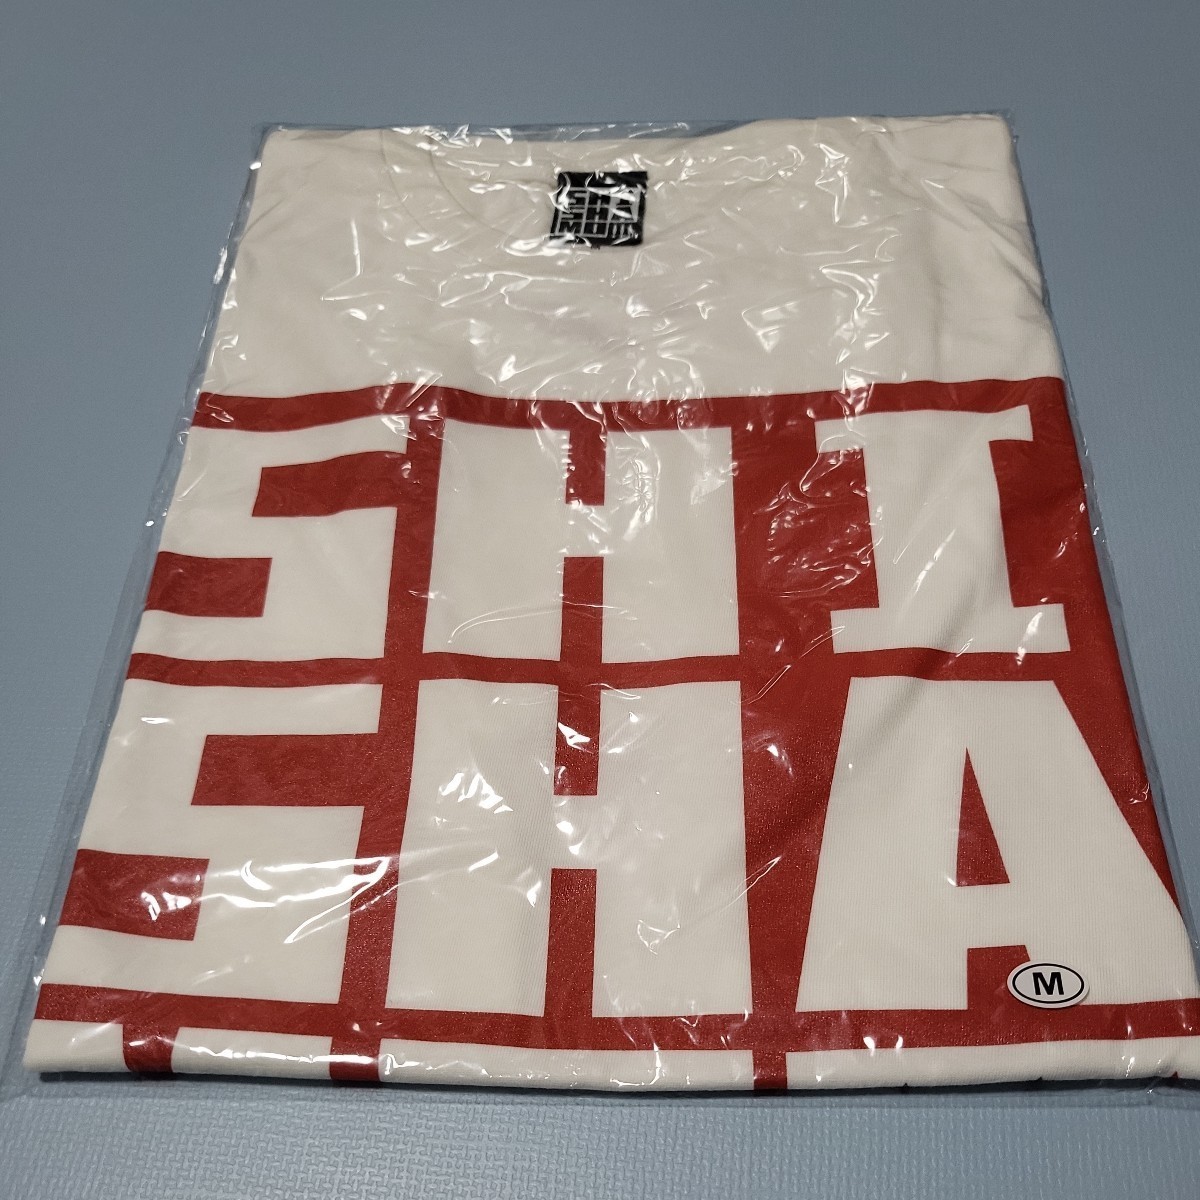 SHISHAMO футболка M размер новый товар нераспечатанный 